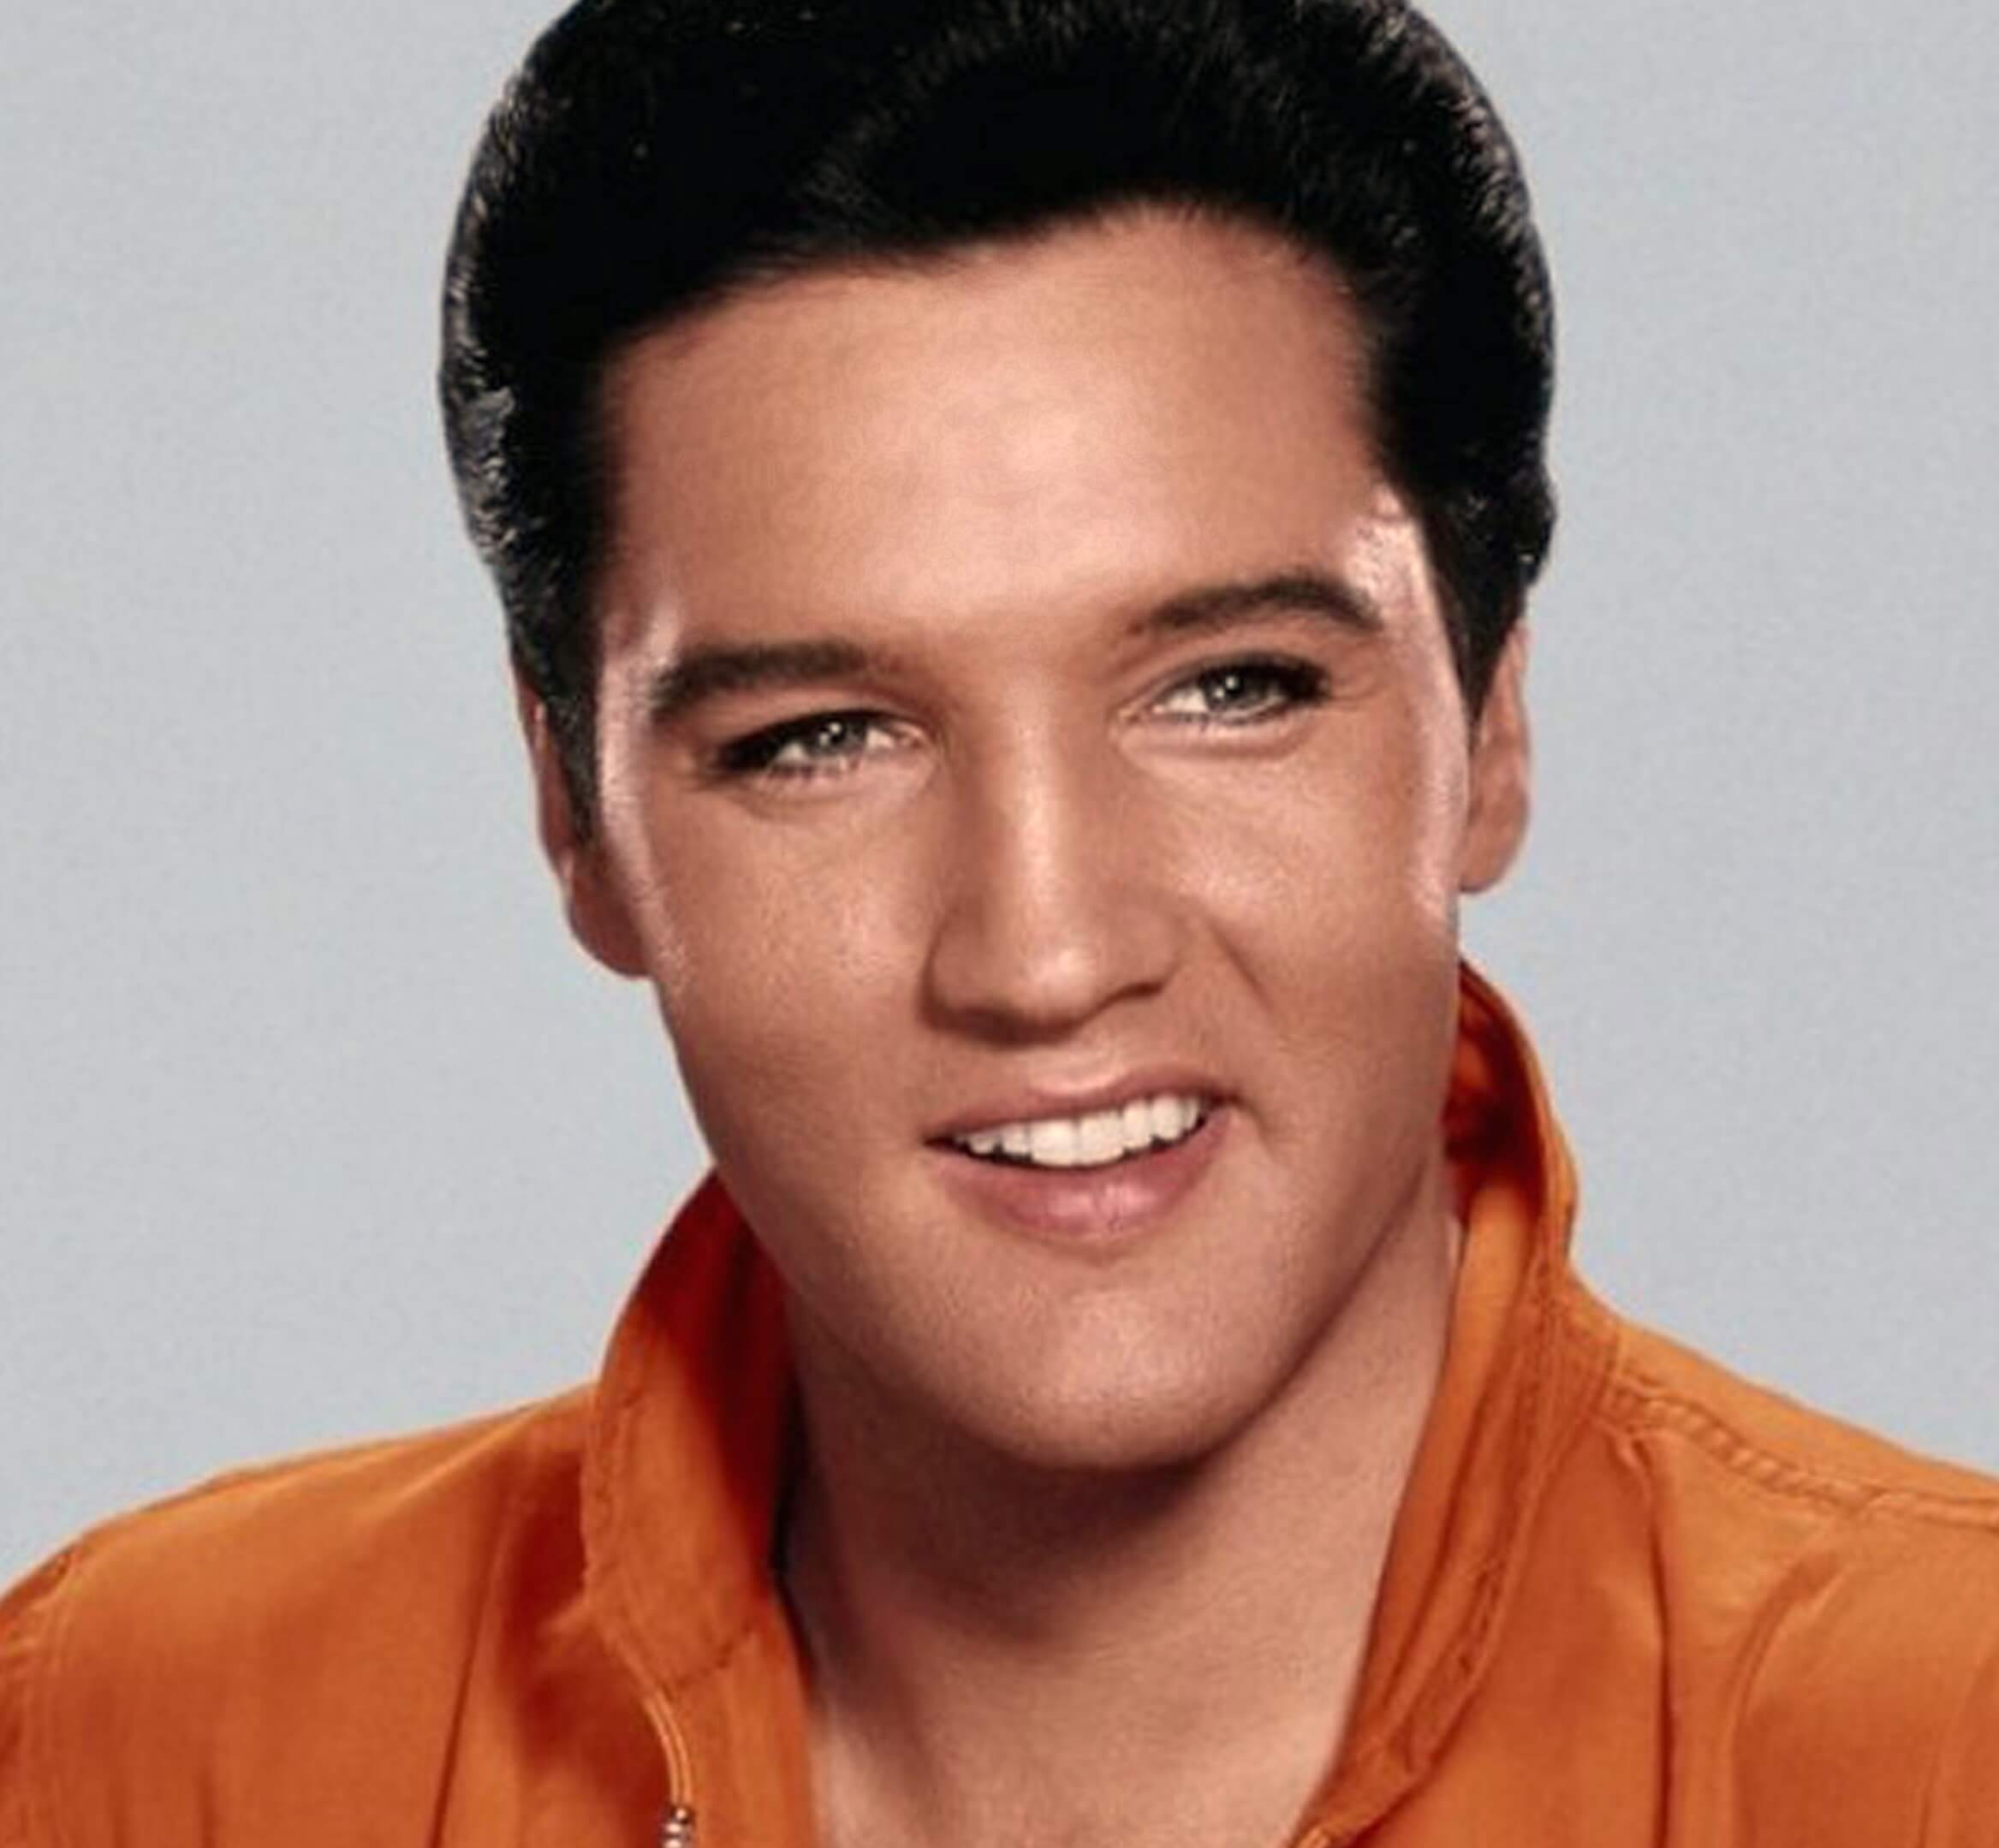 Elvis Presley wearing his 'Viva Las Vegas' jumpsuit